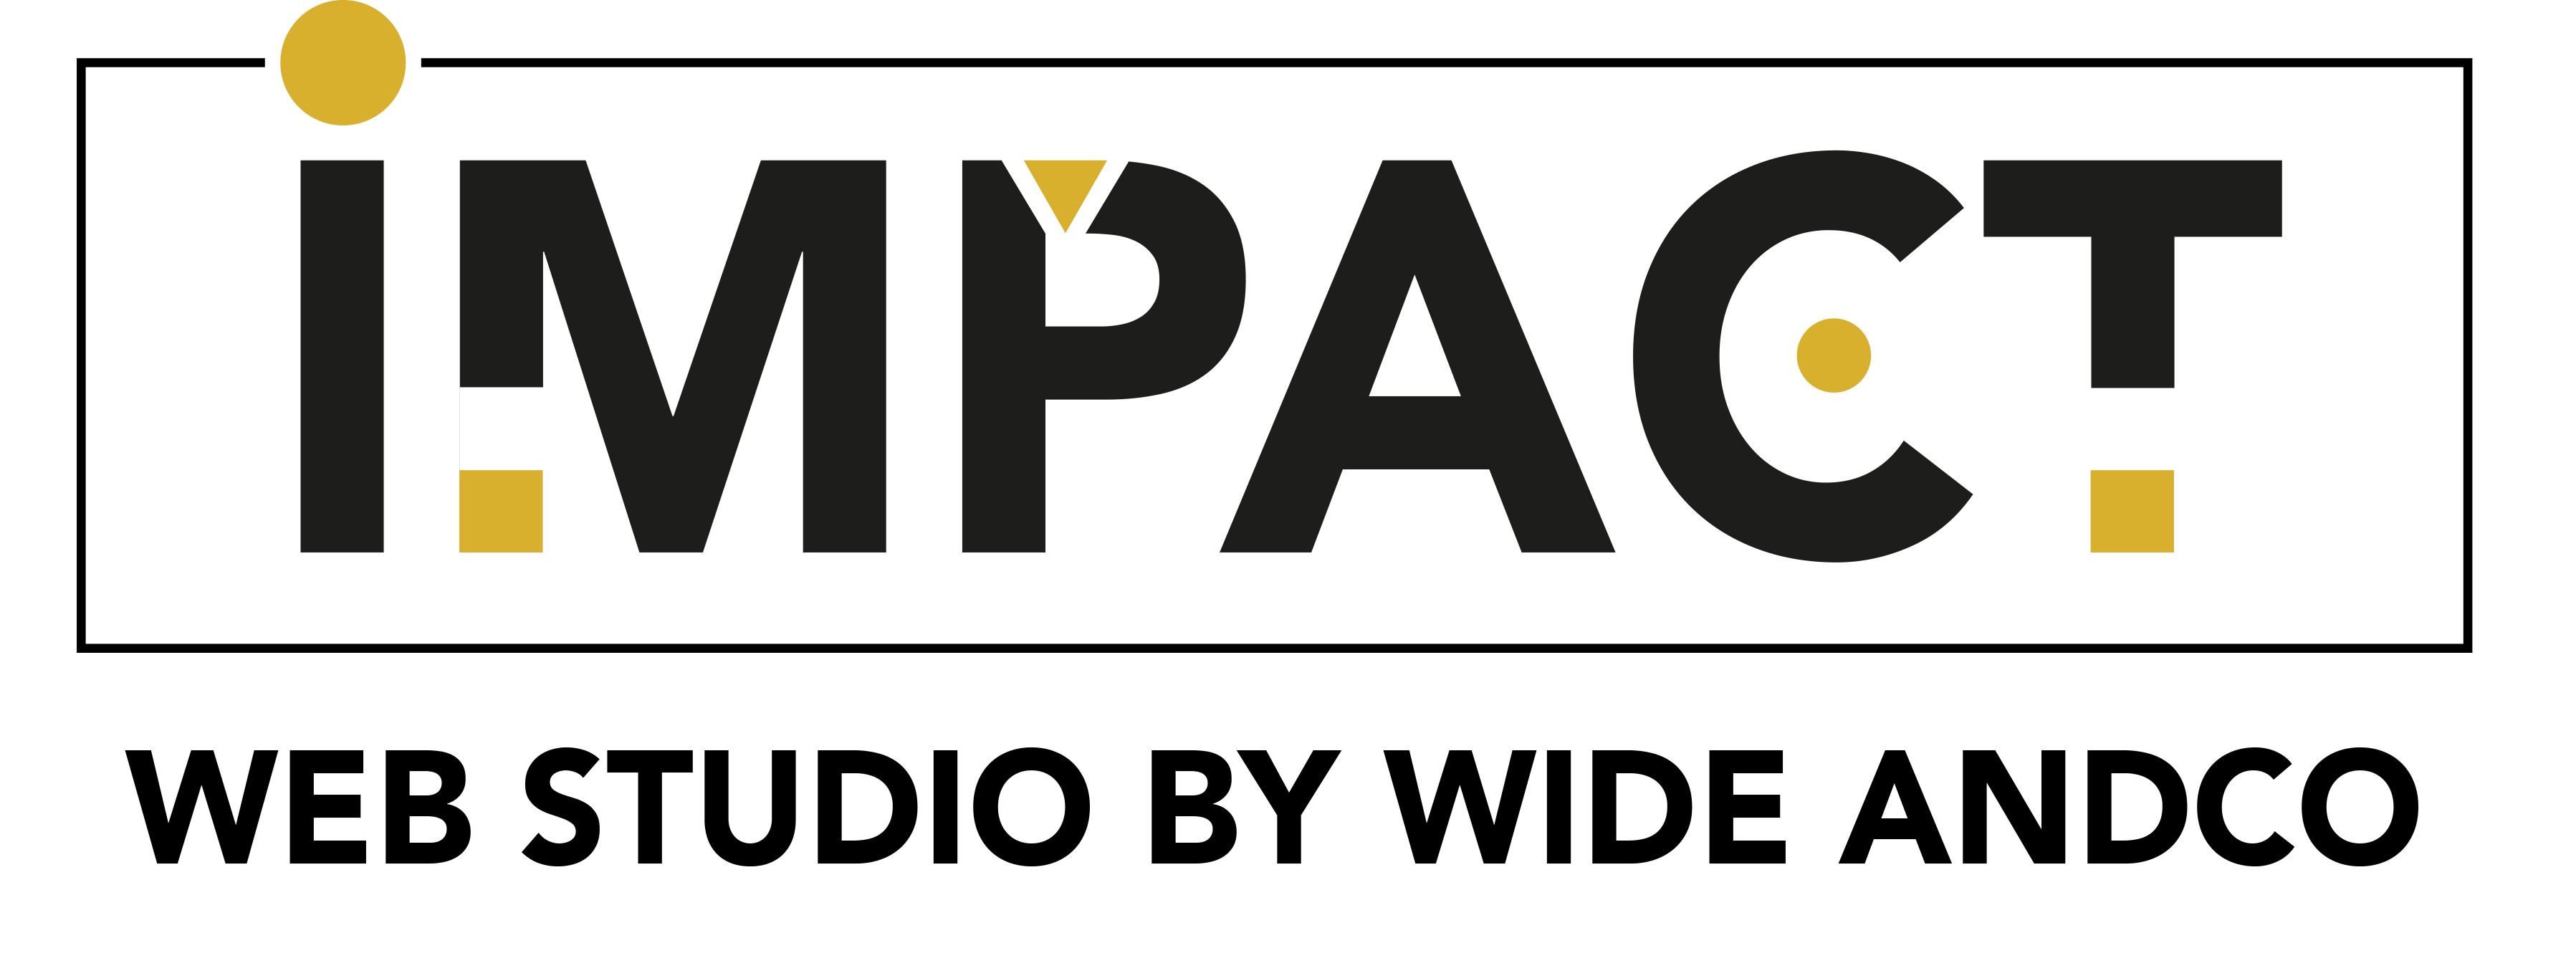 Logo Impact Studio Web texte en noir et formes géométriques jaune or